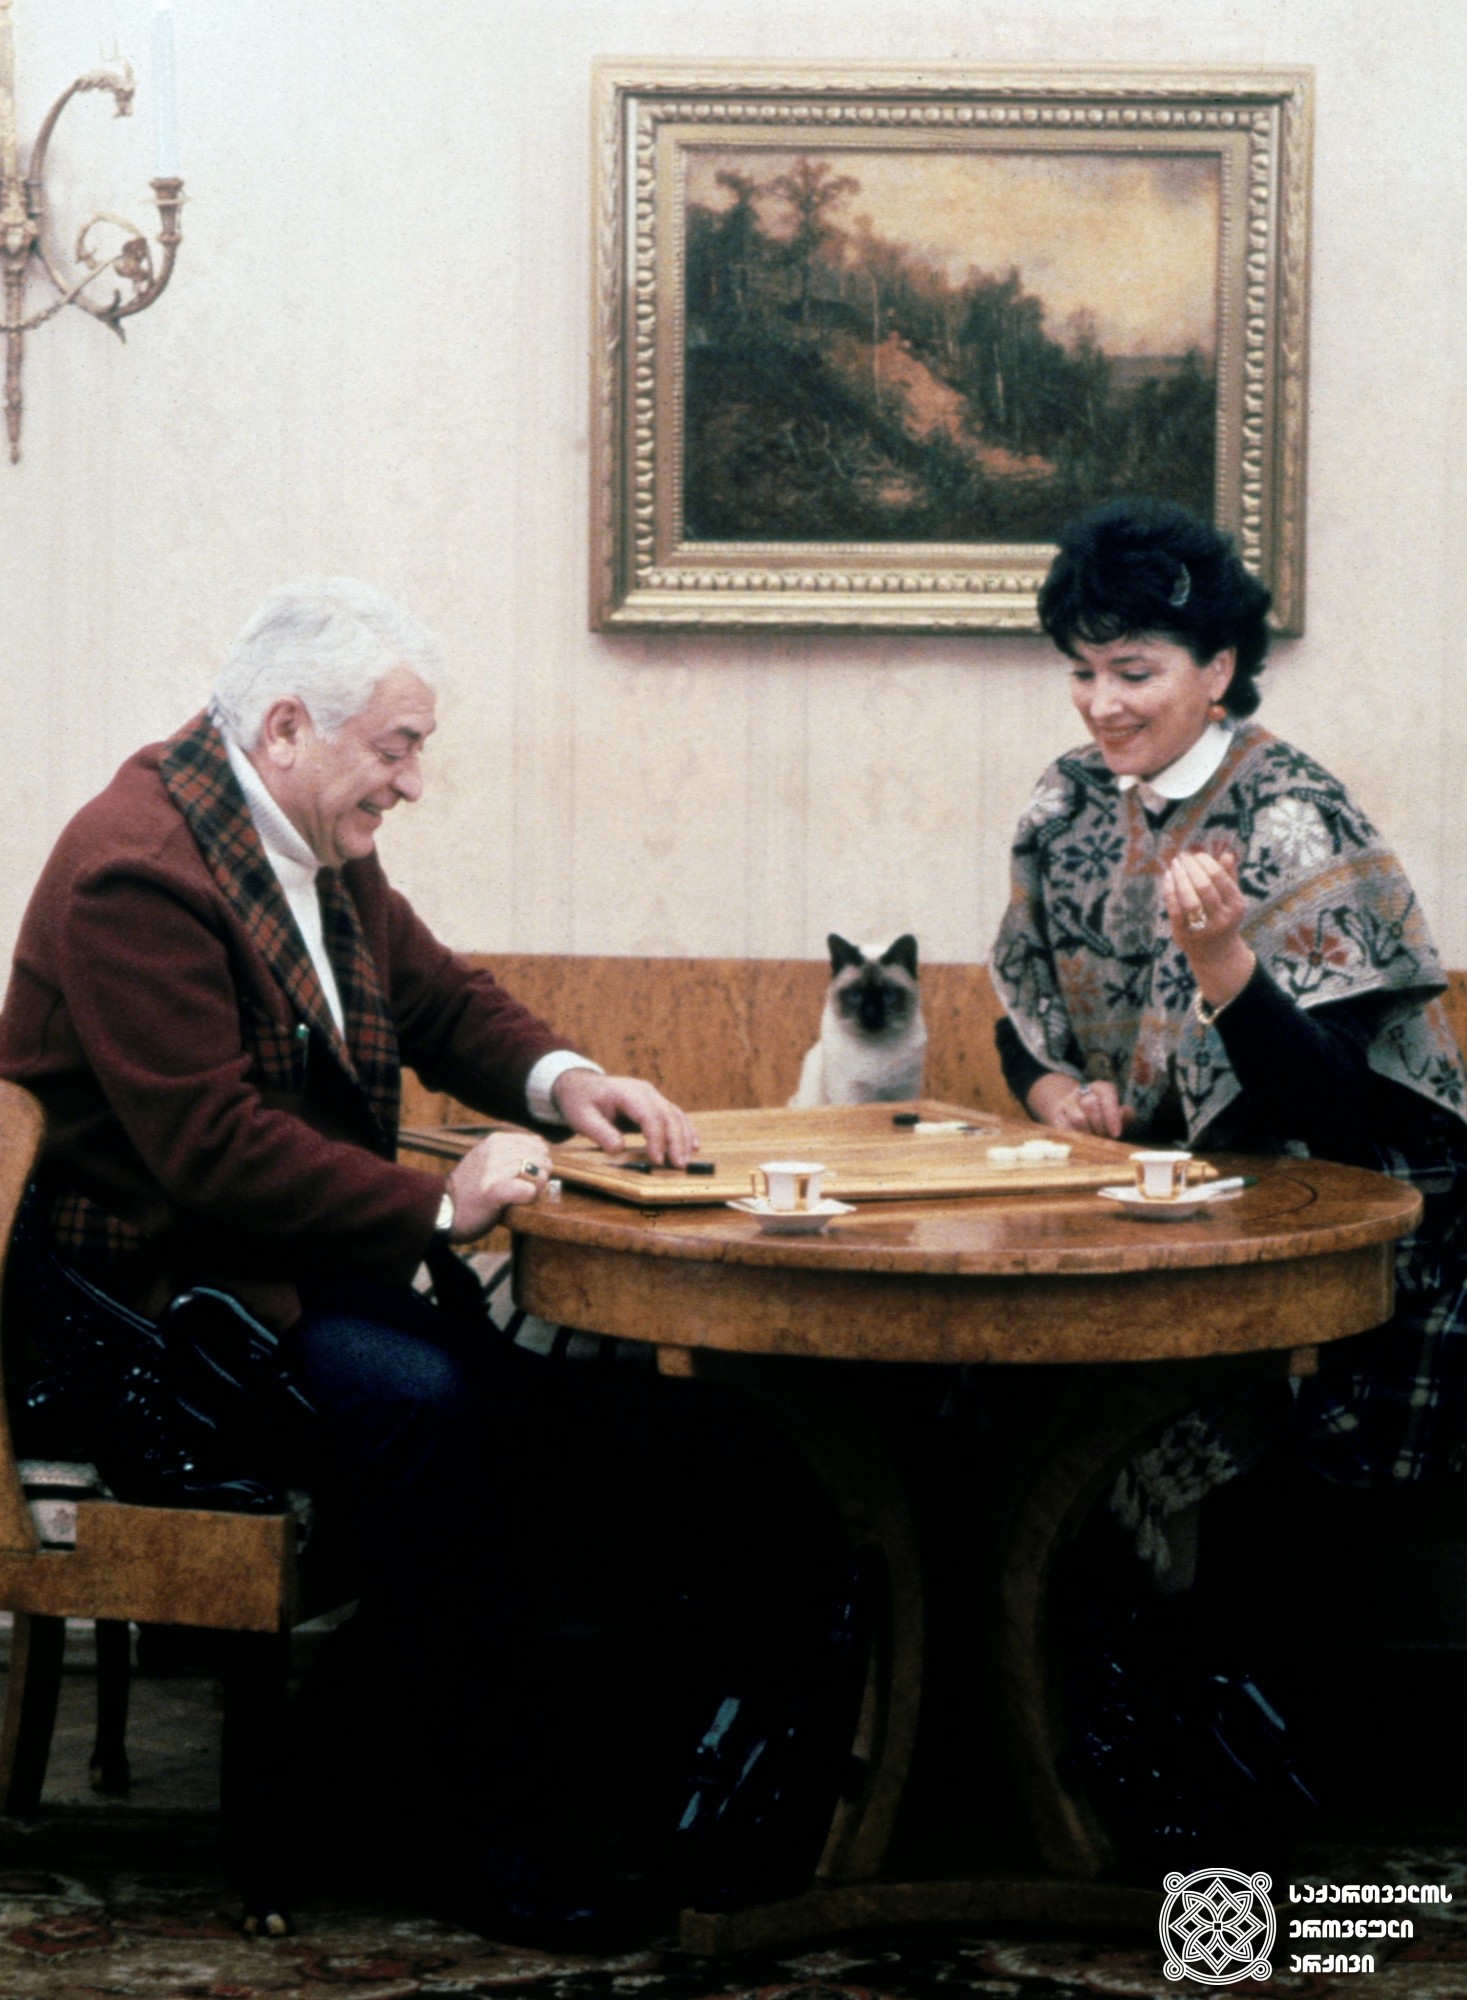 რამაზ ჩხიკვაძე და მისი მეუღლე ნატაშა ჩხიკვაძე. <br>
ანატოლი რუხაძის ფოტო. <br>
1983 წელი. <br>

Ramaz Chkhikvadze and his wife Natasha Chkhikvadze. <br>
Photo by Anatoly Rukhadze. <br>
1983.